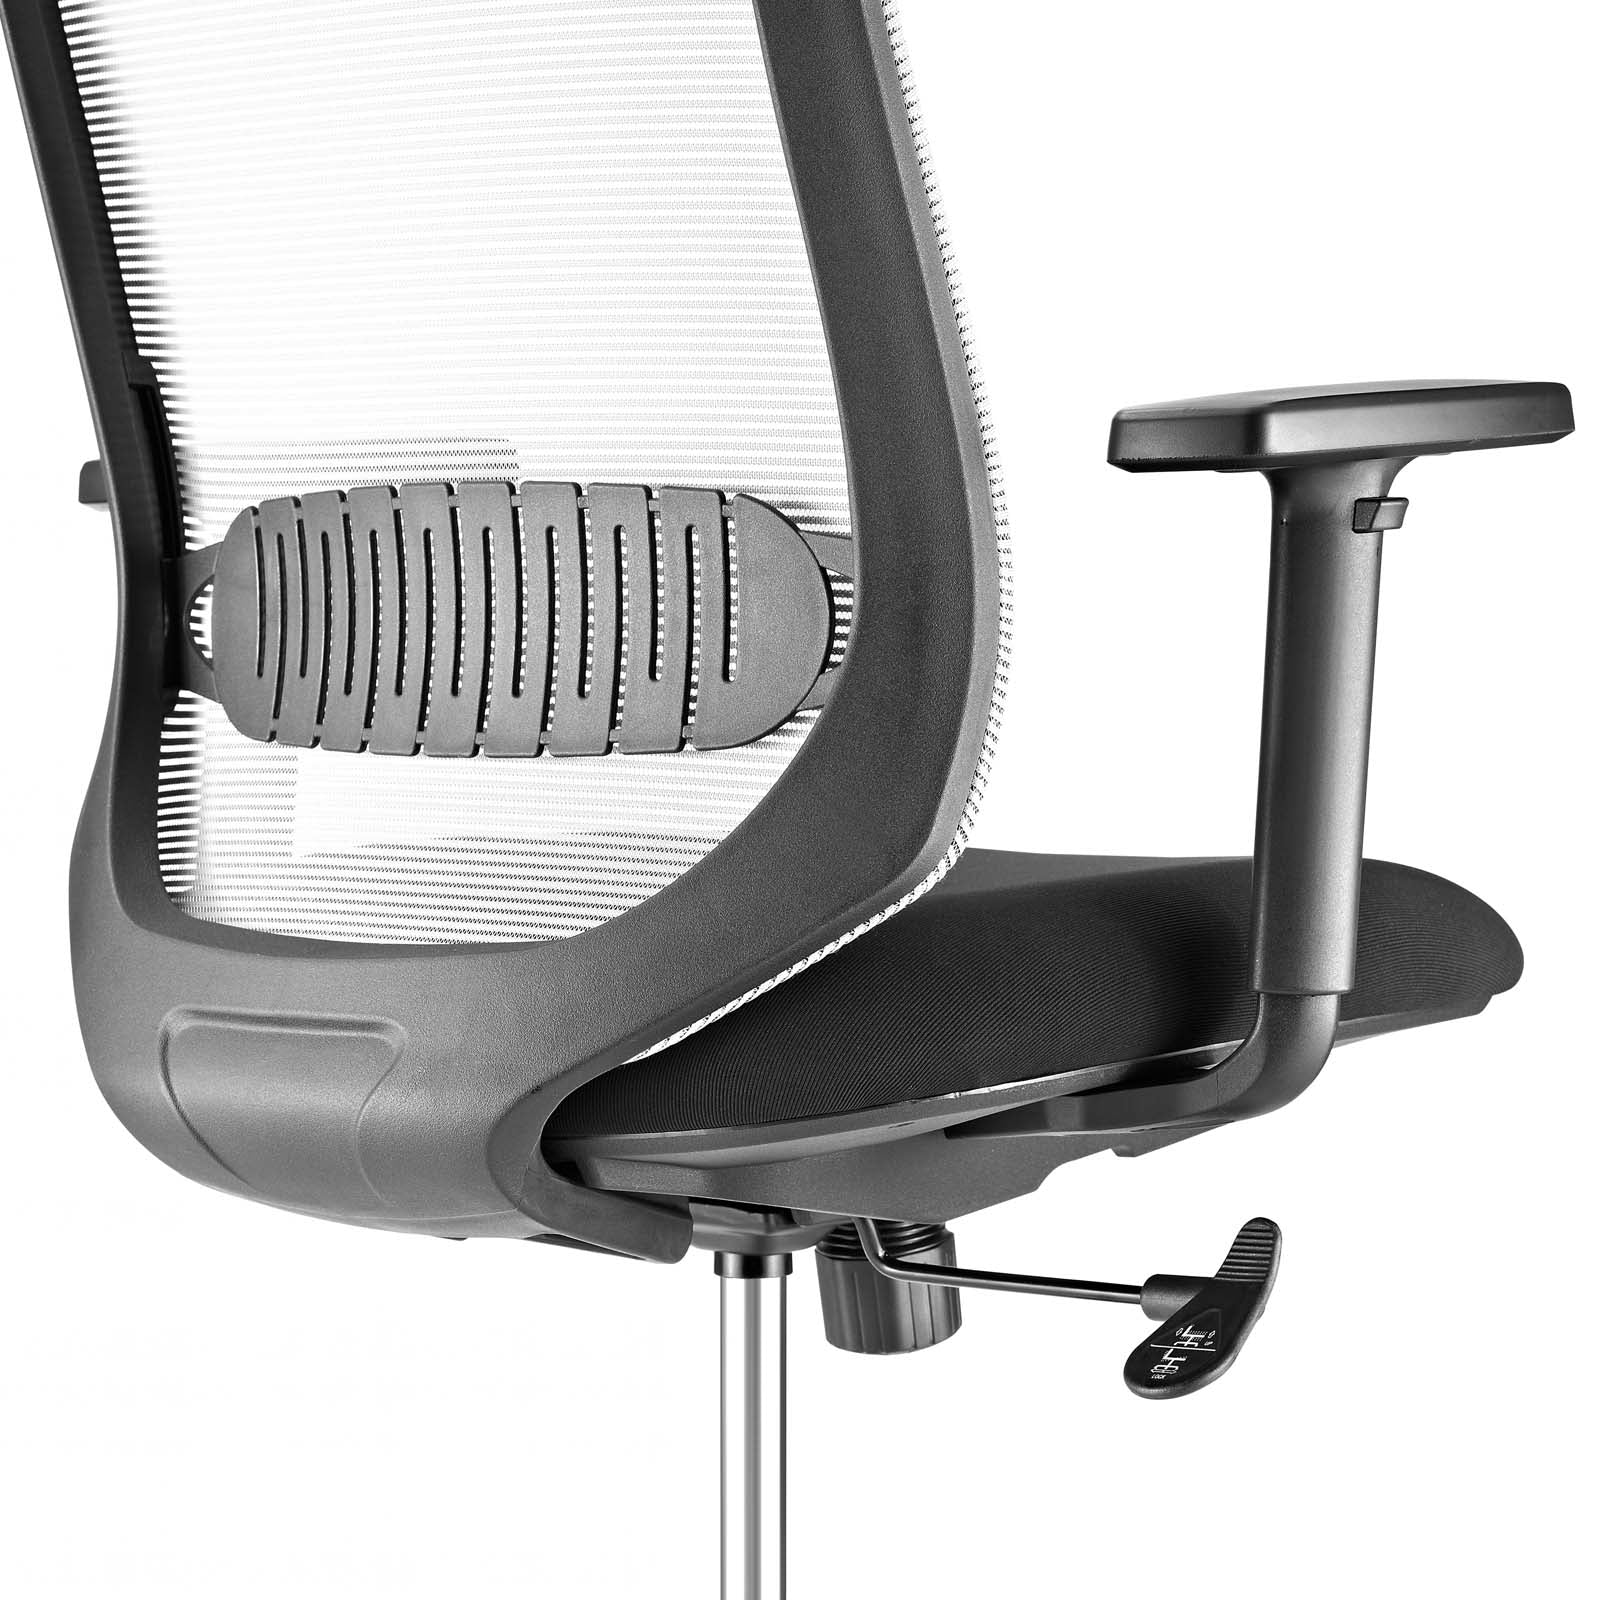 Modway Furniture Modern Acclaim Mesh Drafting Chair - EEI-2862-Minimal & Modern